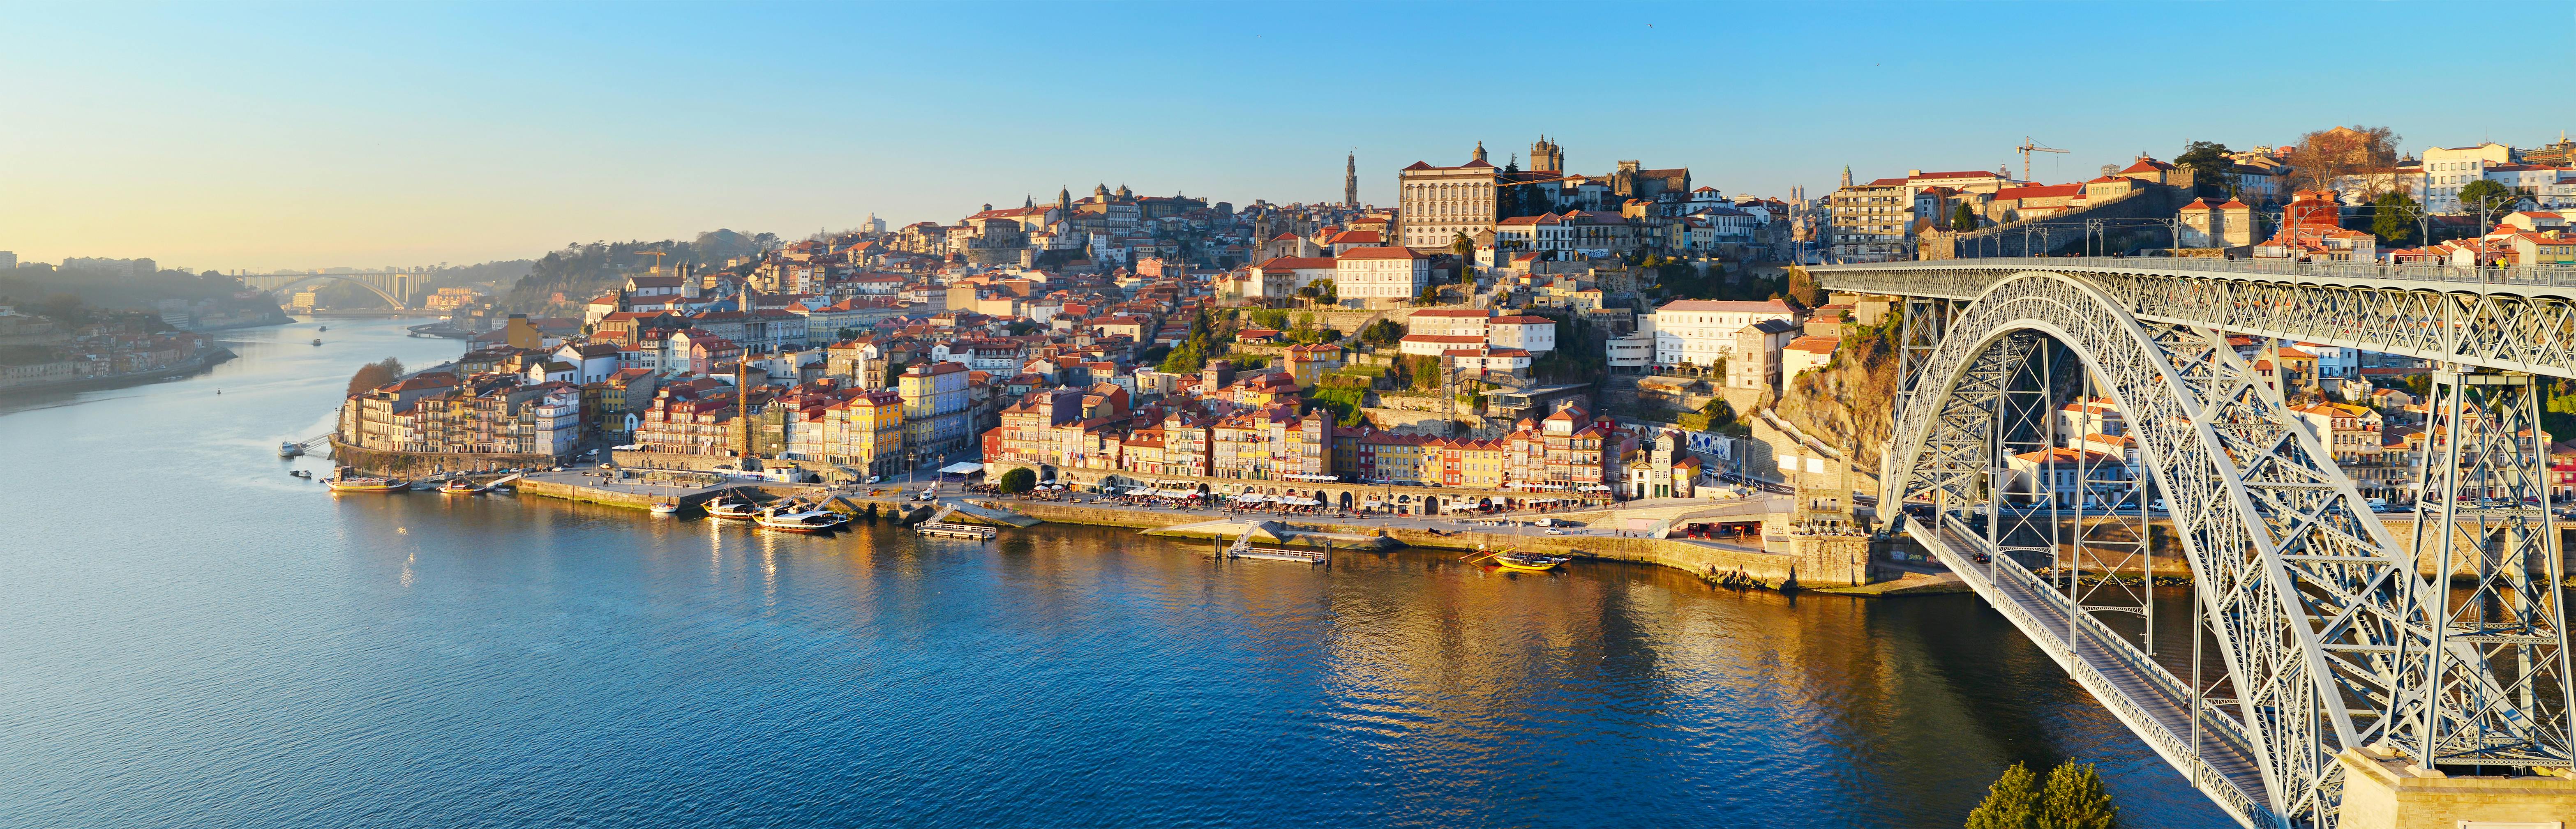 Best of Porto walking tour